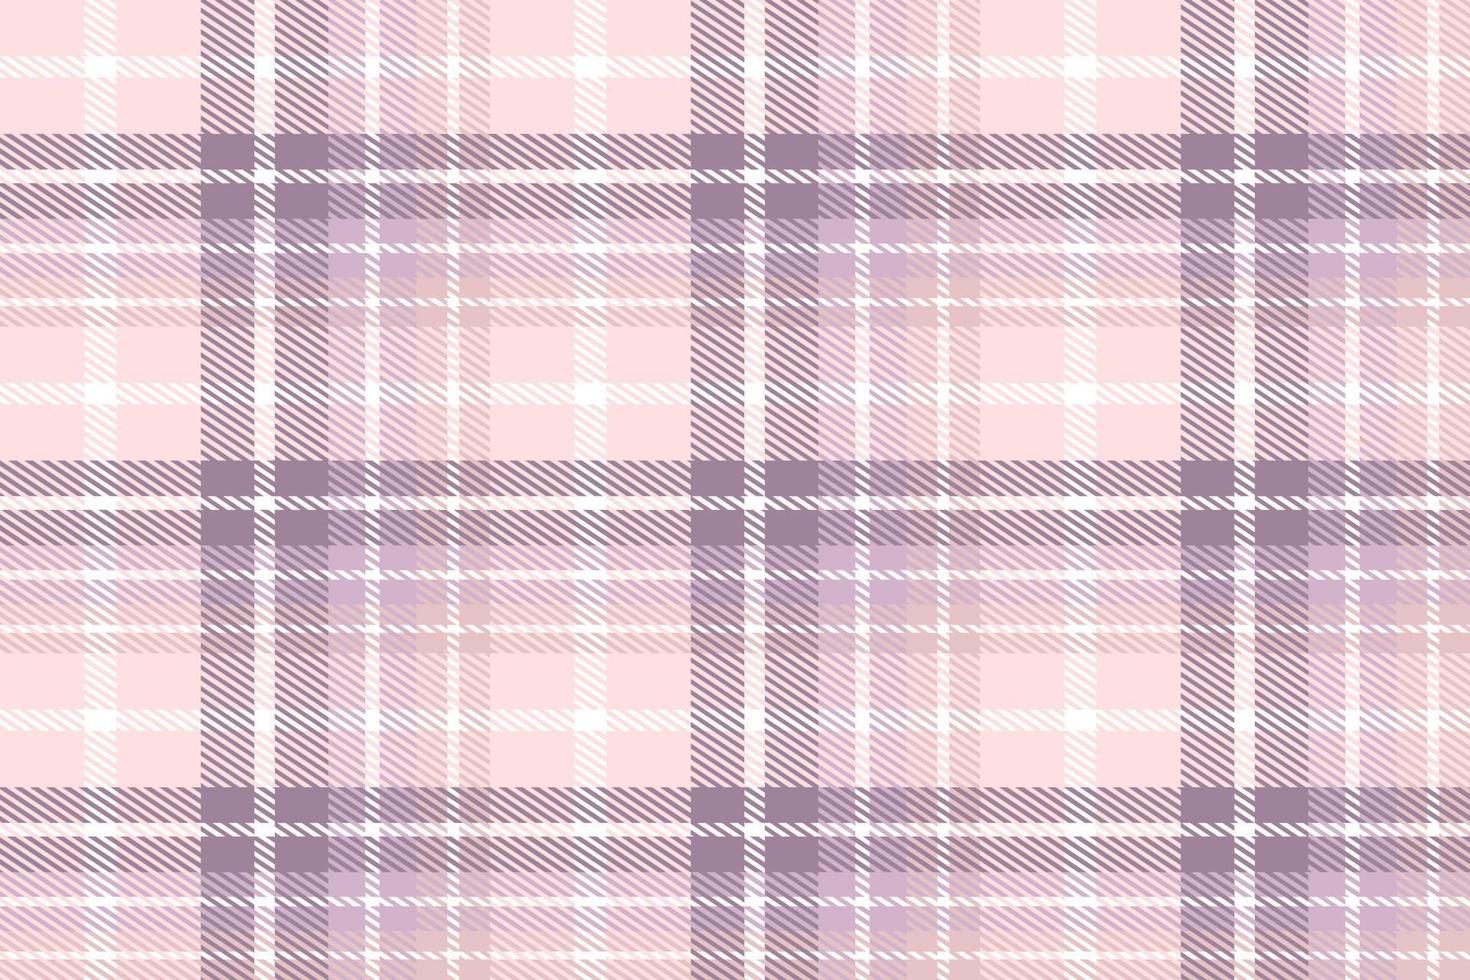 púrpura tartán modelo tela vector diseño es un estampado paño consistente de entrecruzado cruzado, horizontal y vertical bandas en múltiple colores. tartanes son considerado como un cultural Escocia.